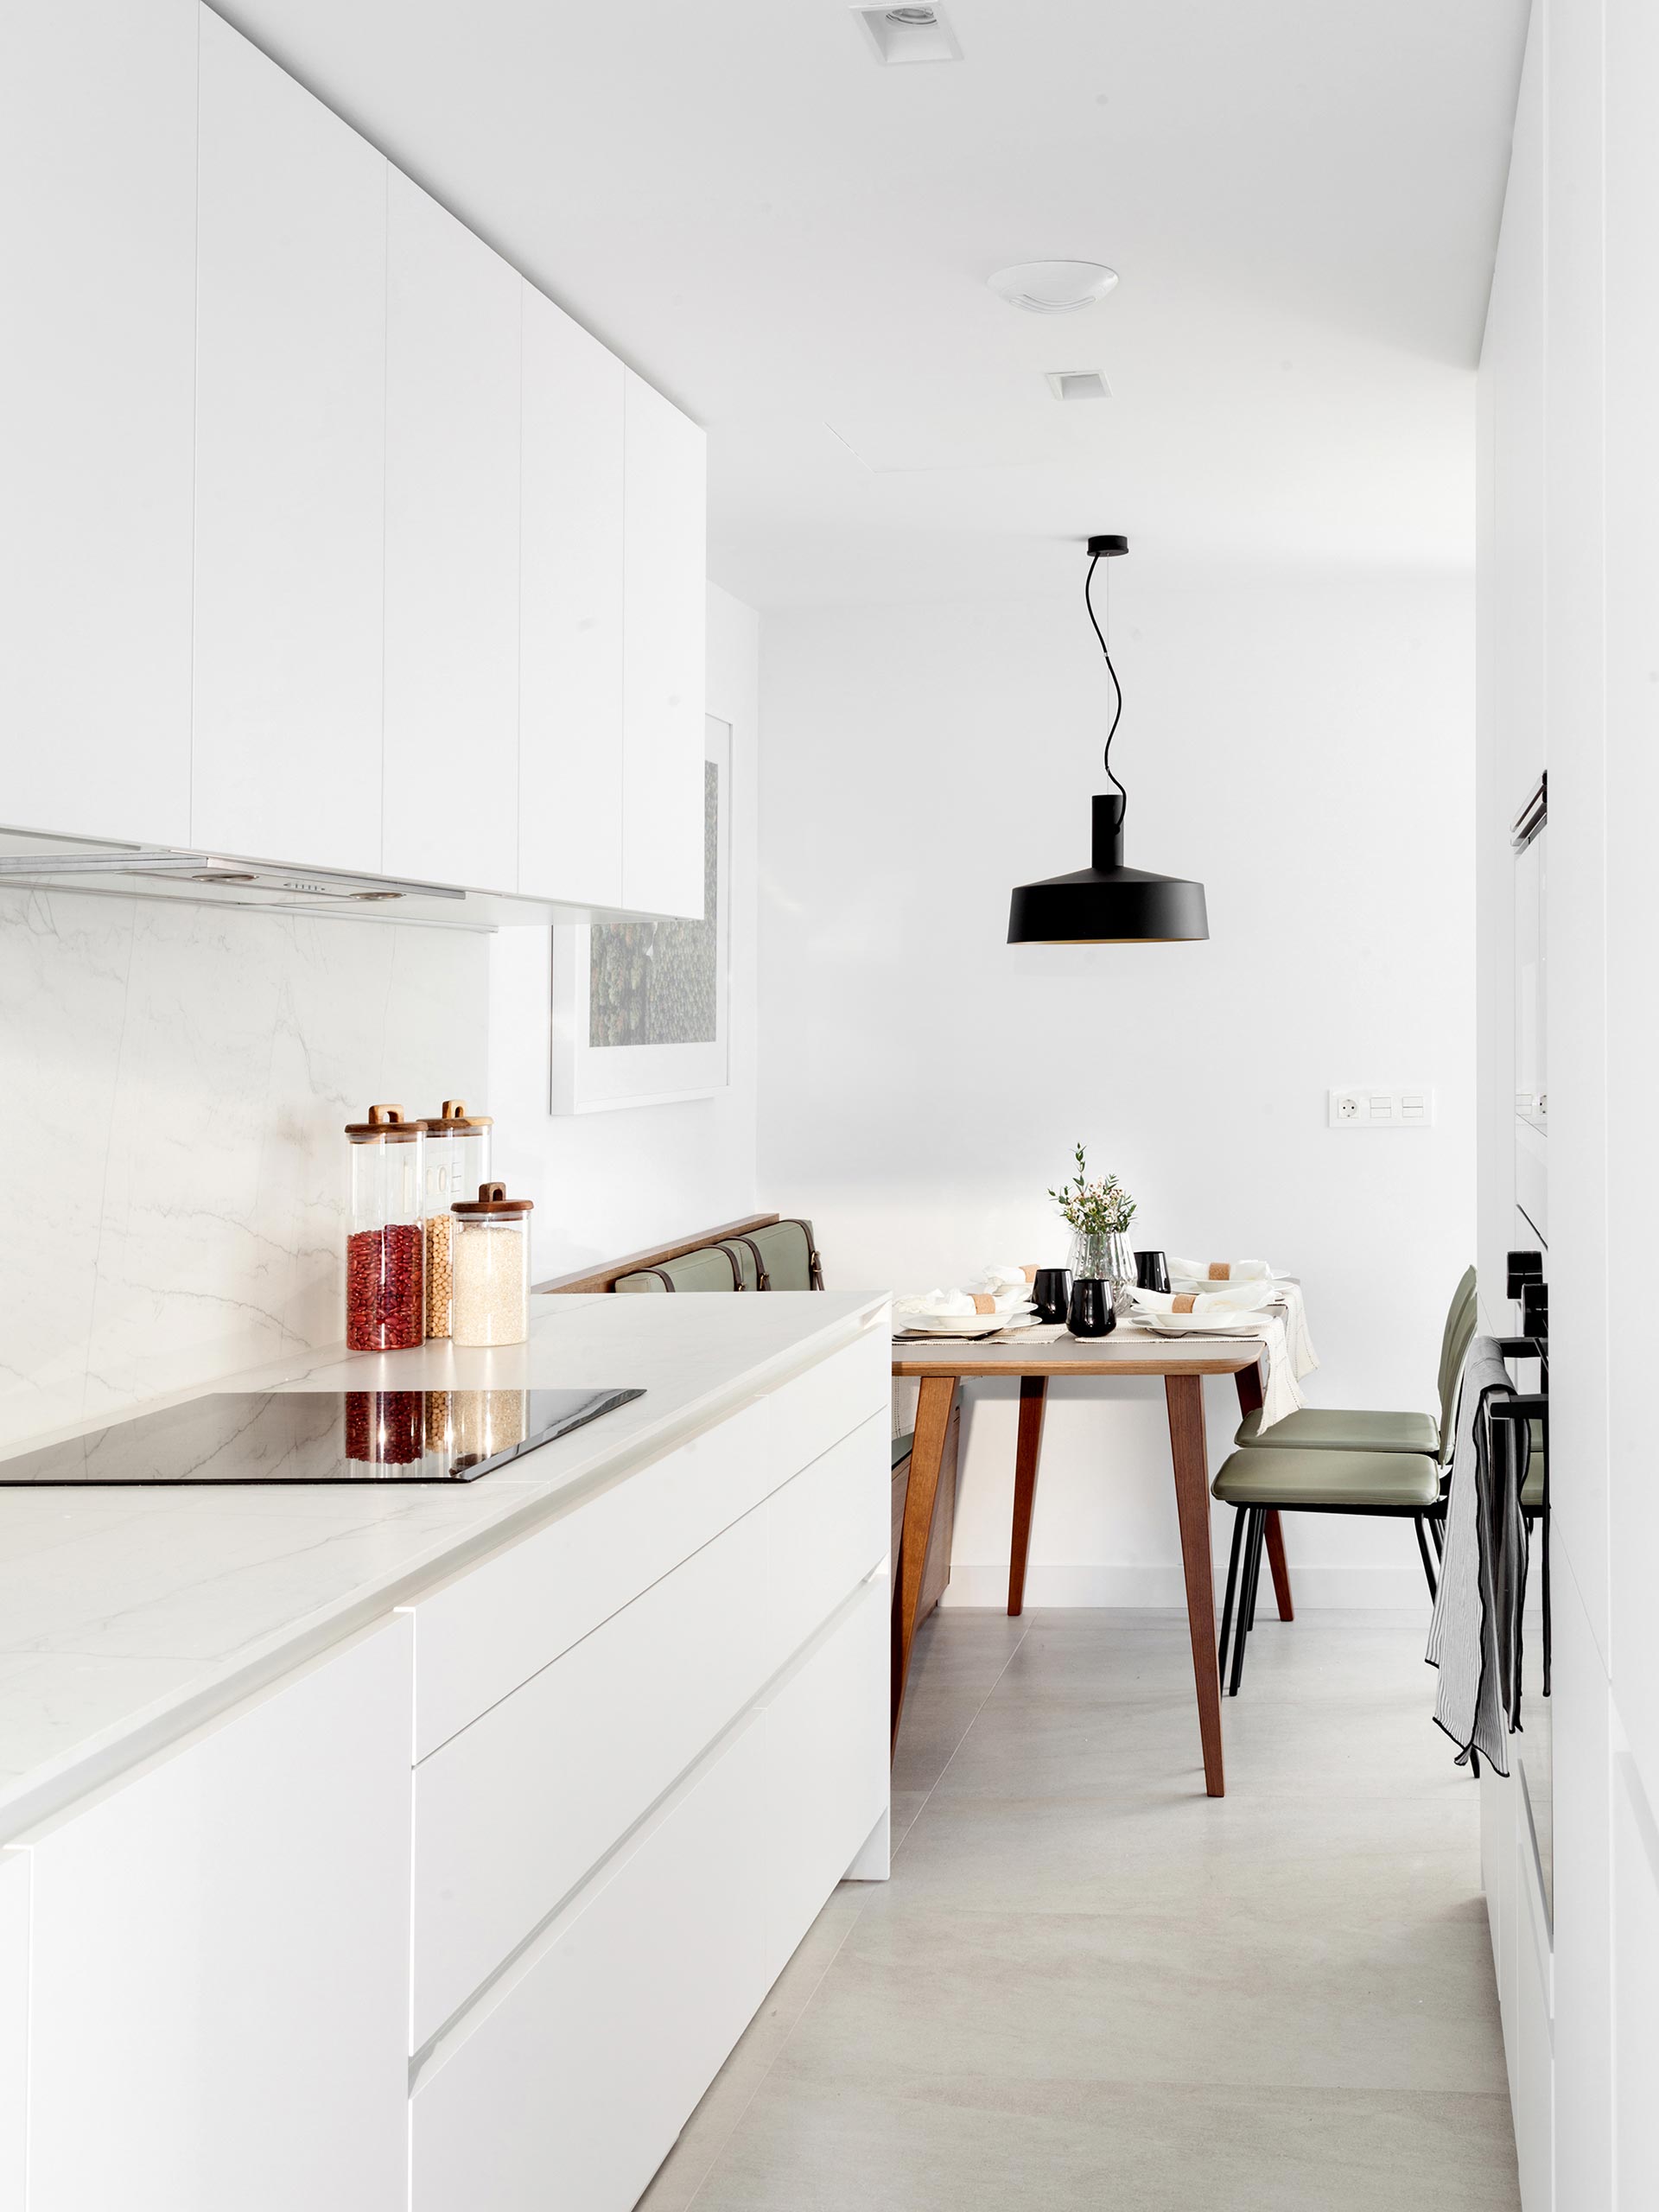 Cozinhas Santos em espaços pequenos, pela designer Natalia Zubizarreta